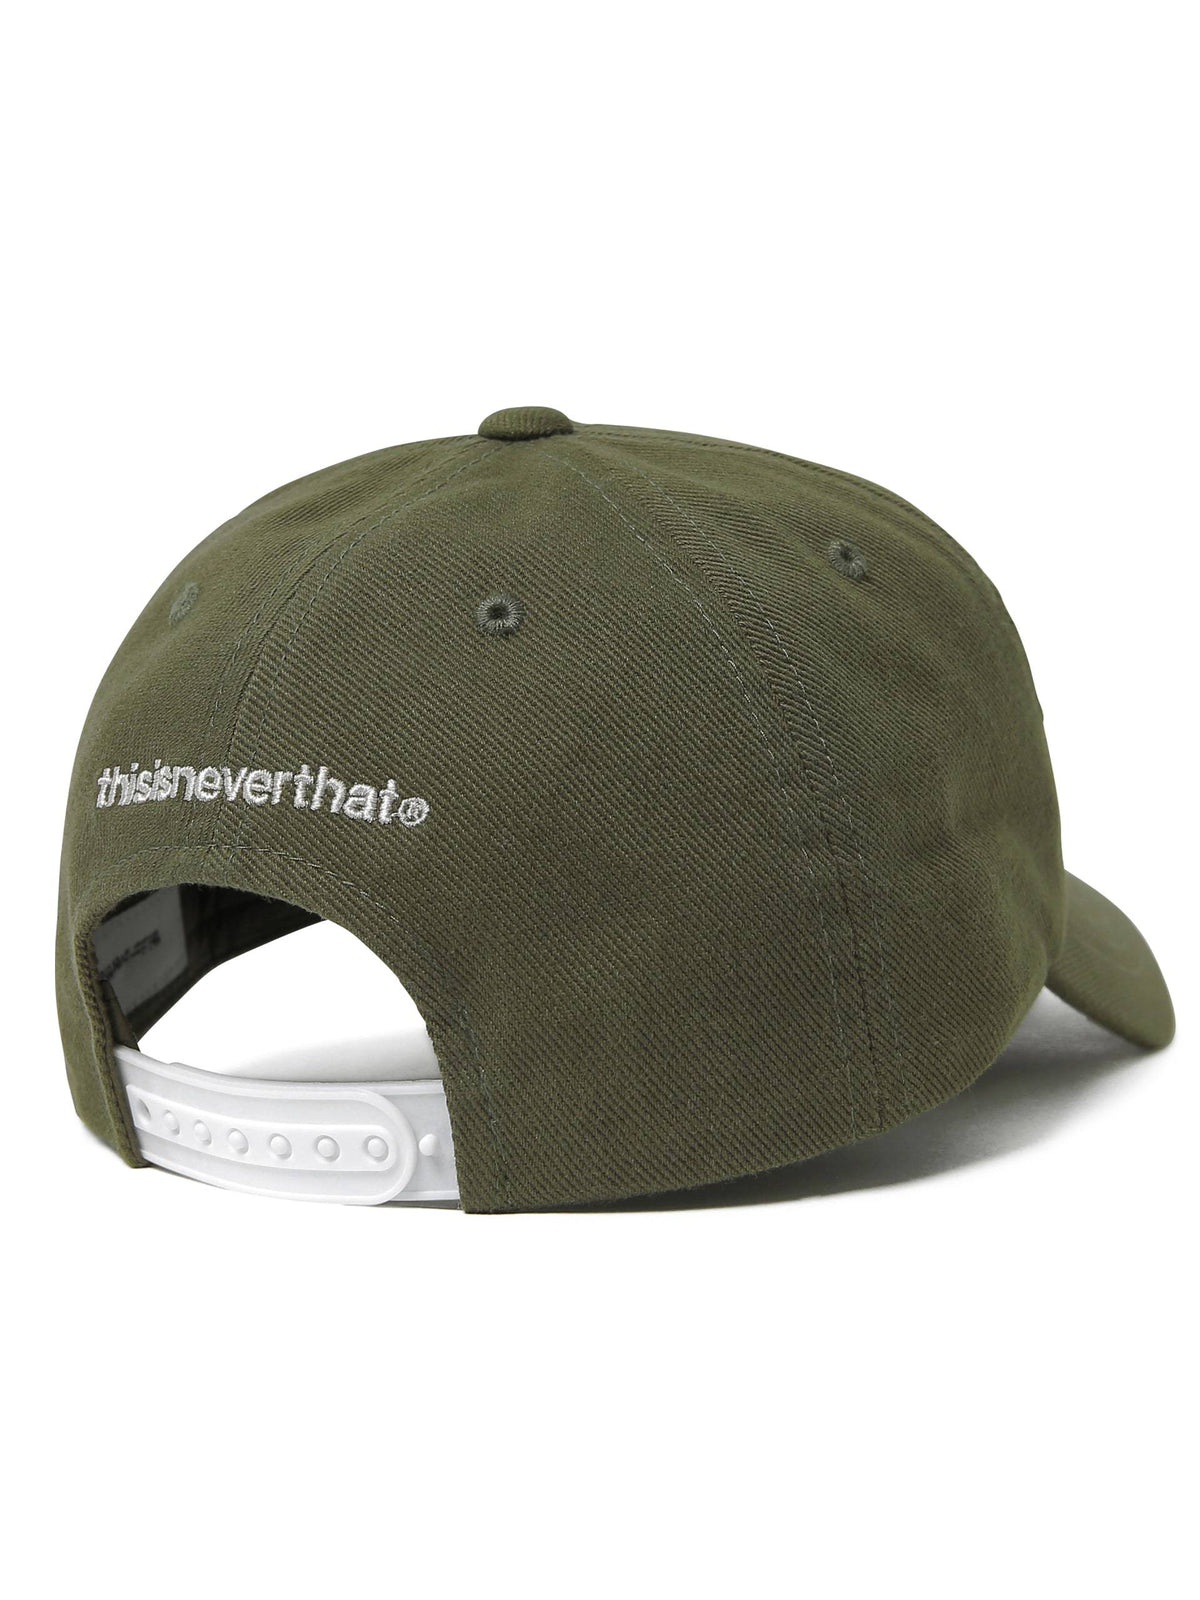 Palm Trucker Cap Headwear 